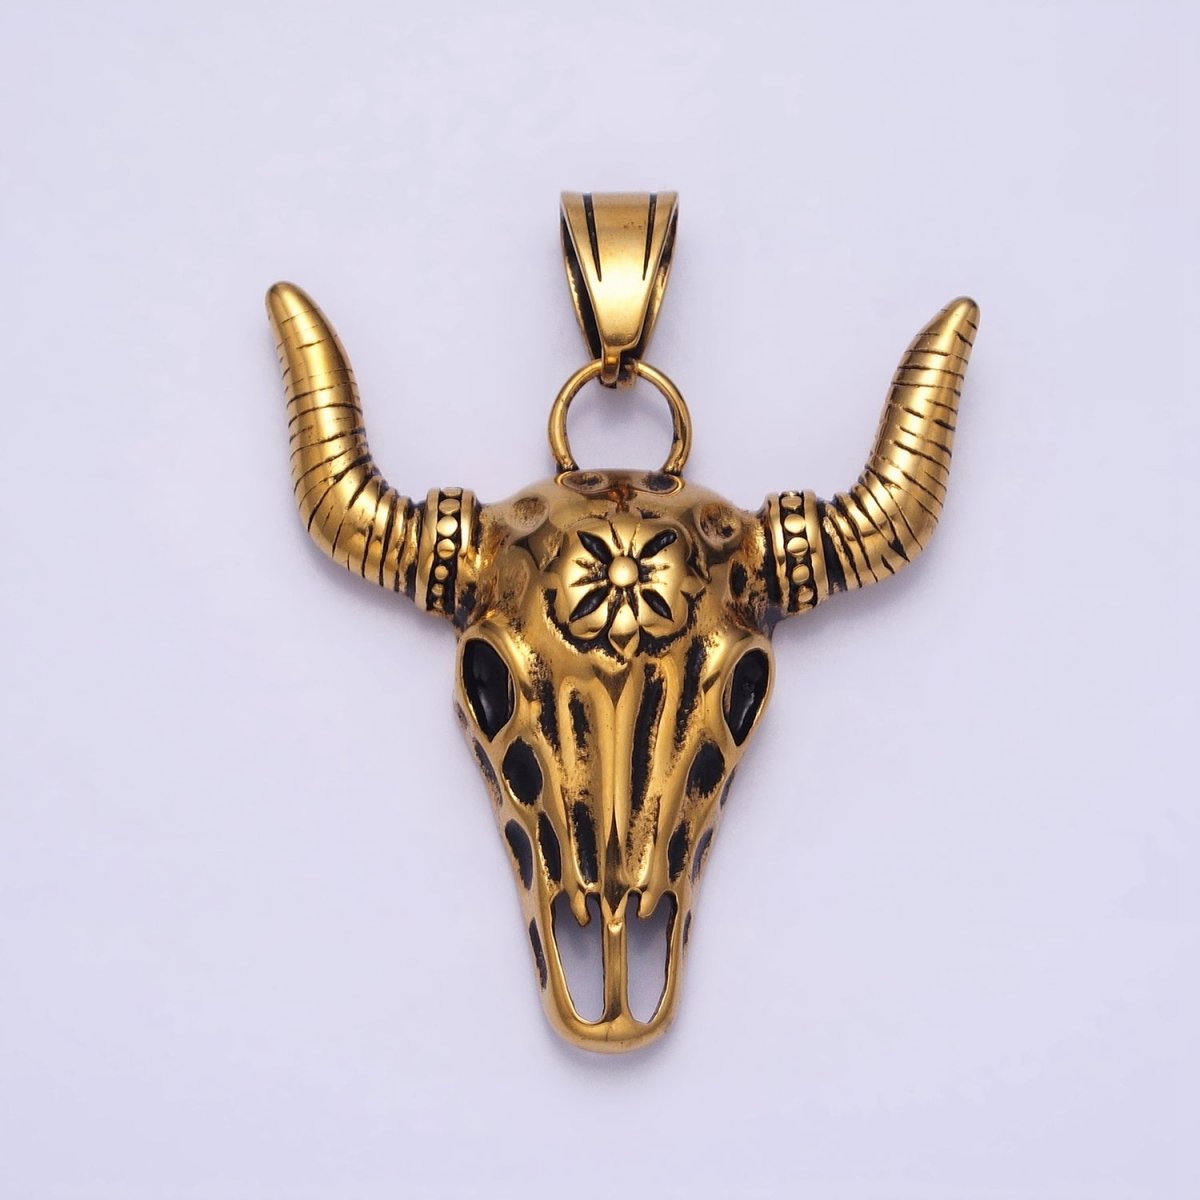 Stainless Steel Flower Line Textured Long-Horned Bull Animal Gold, Silver Pendant | P-1135 - DLUXCA